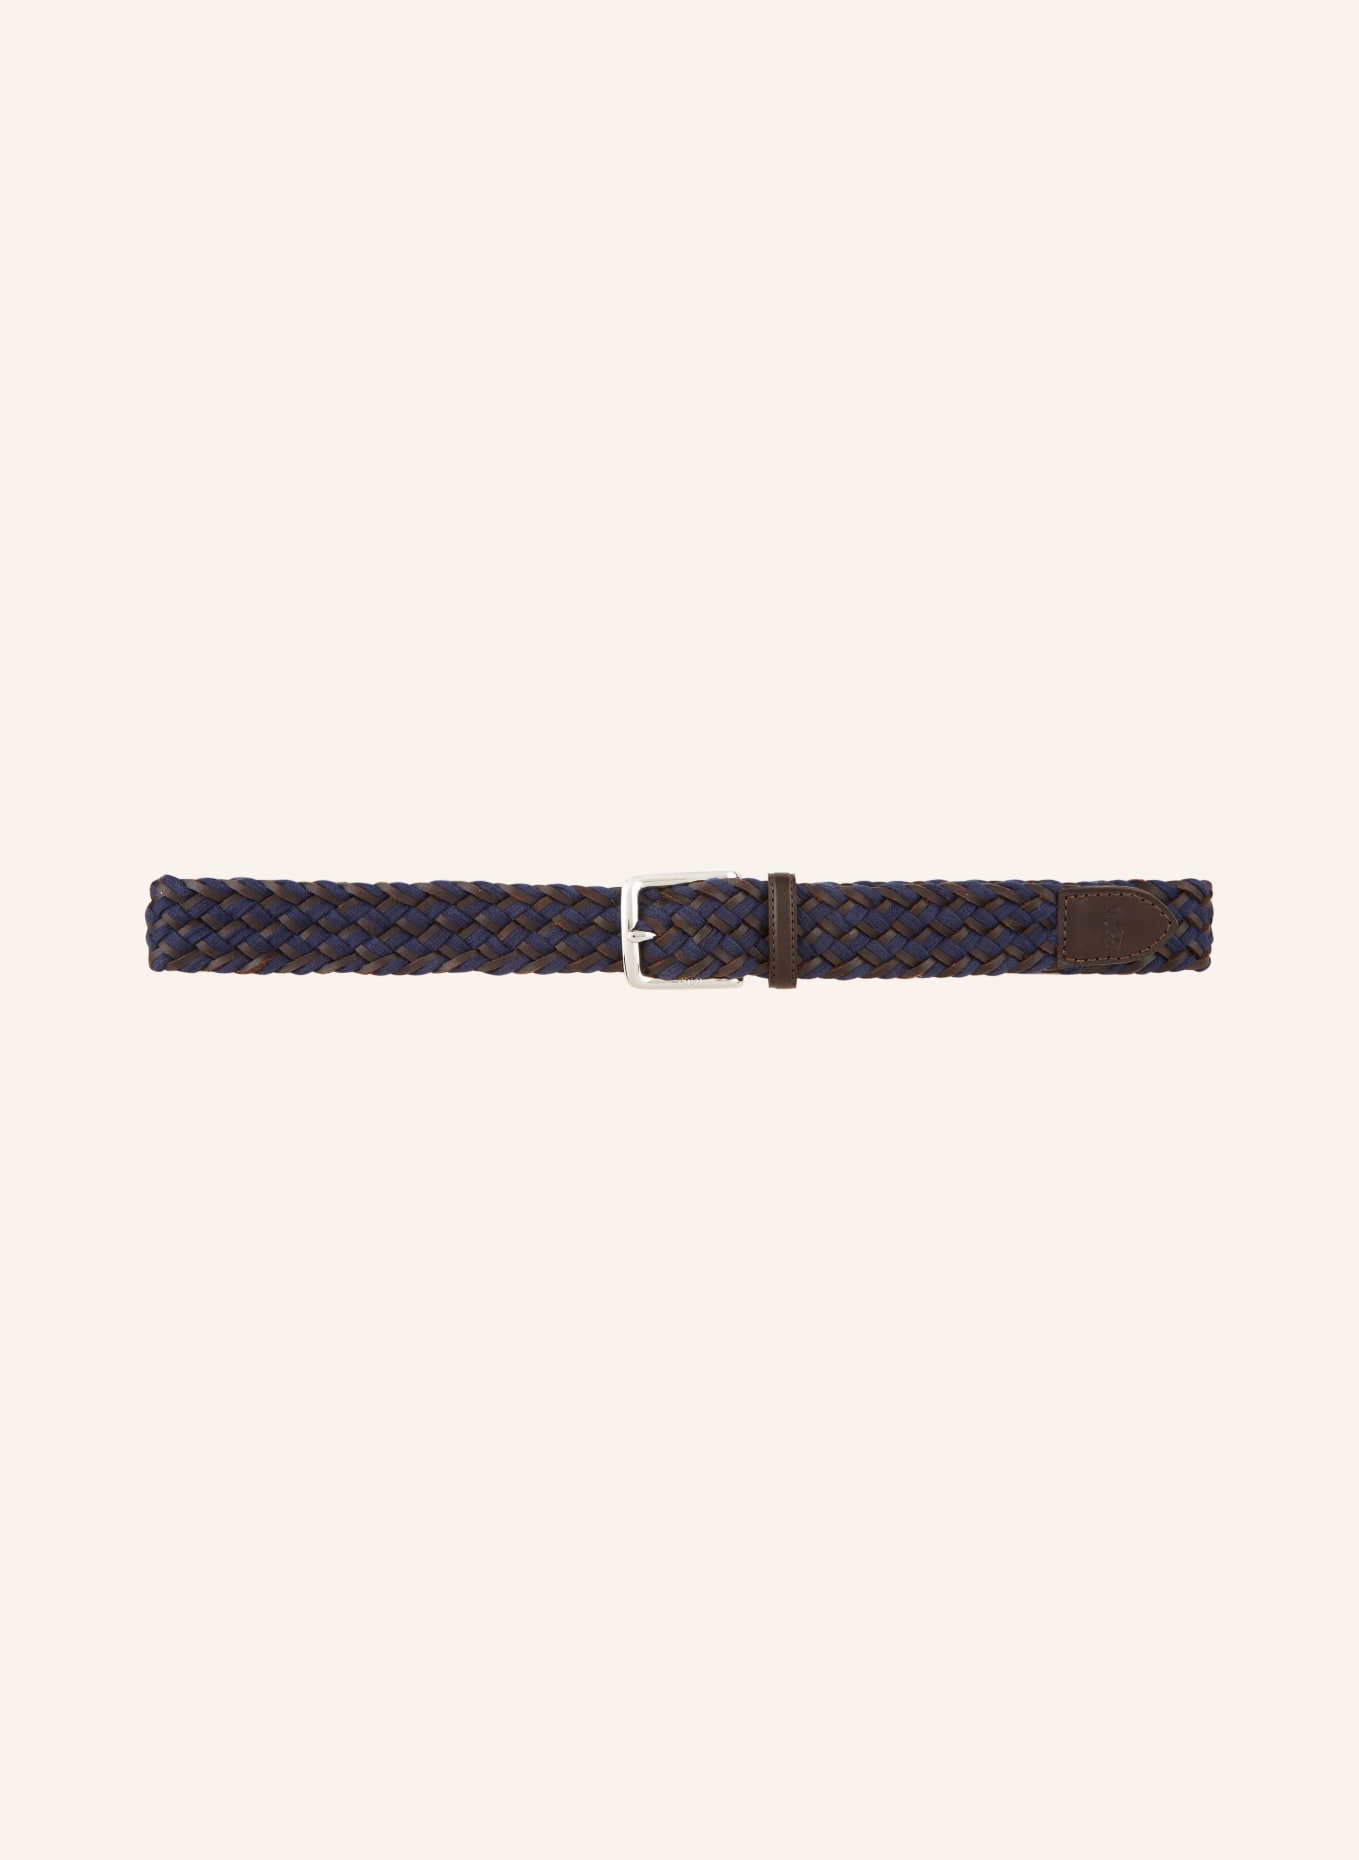 POLO RALPH LAUREN Braided belt, Color: DARK BLUE/ DARK BROWN (Image 2)